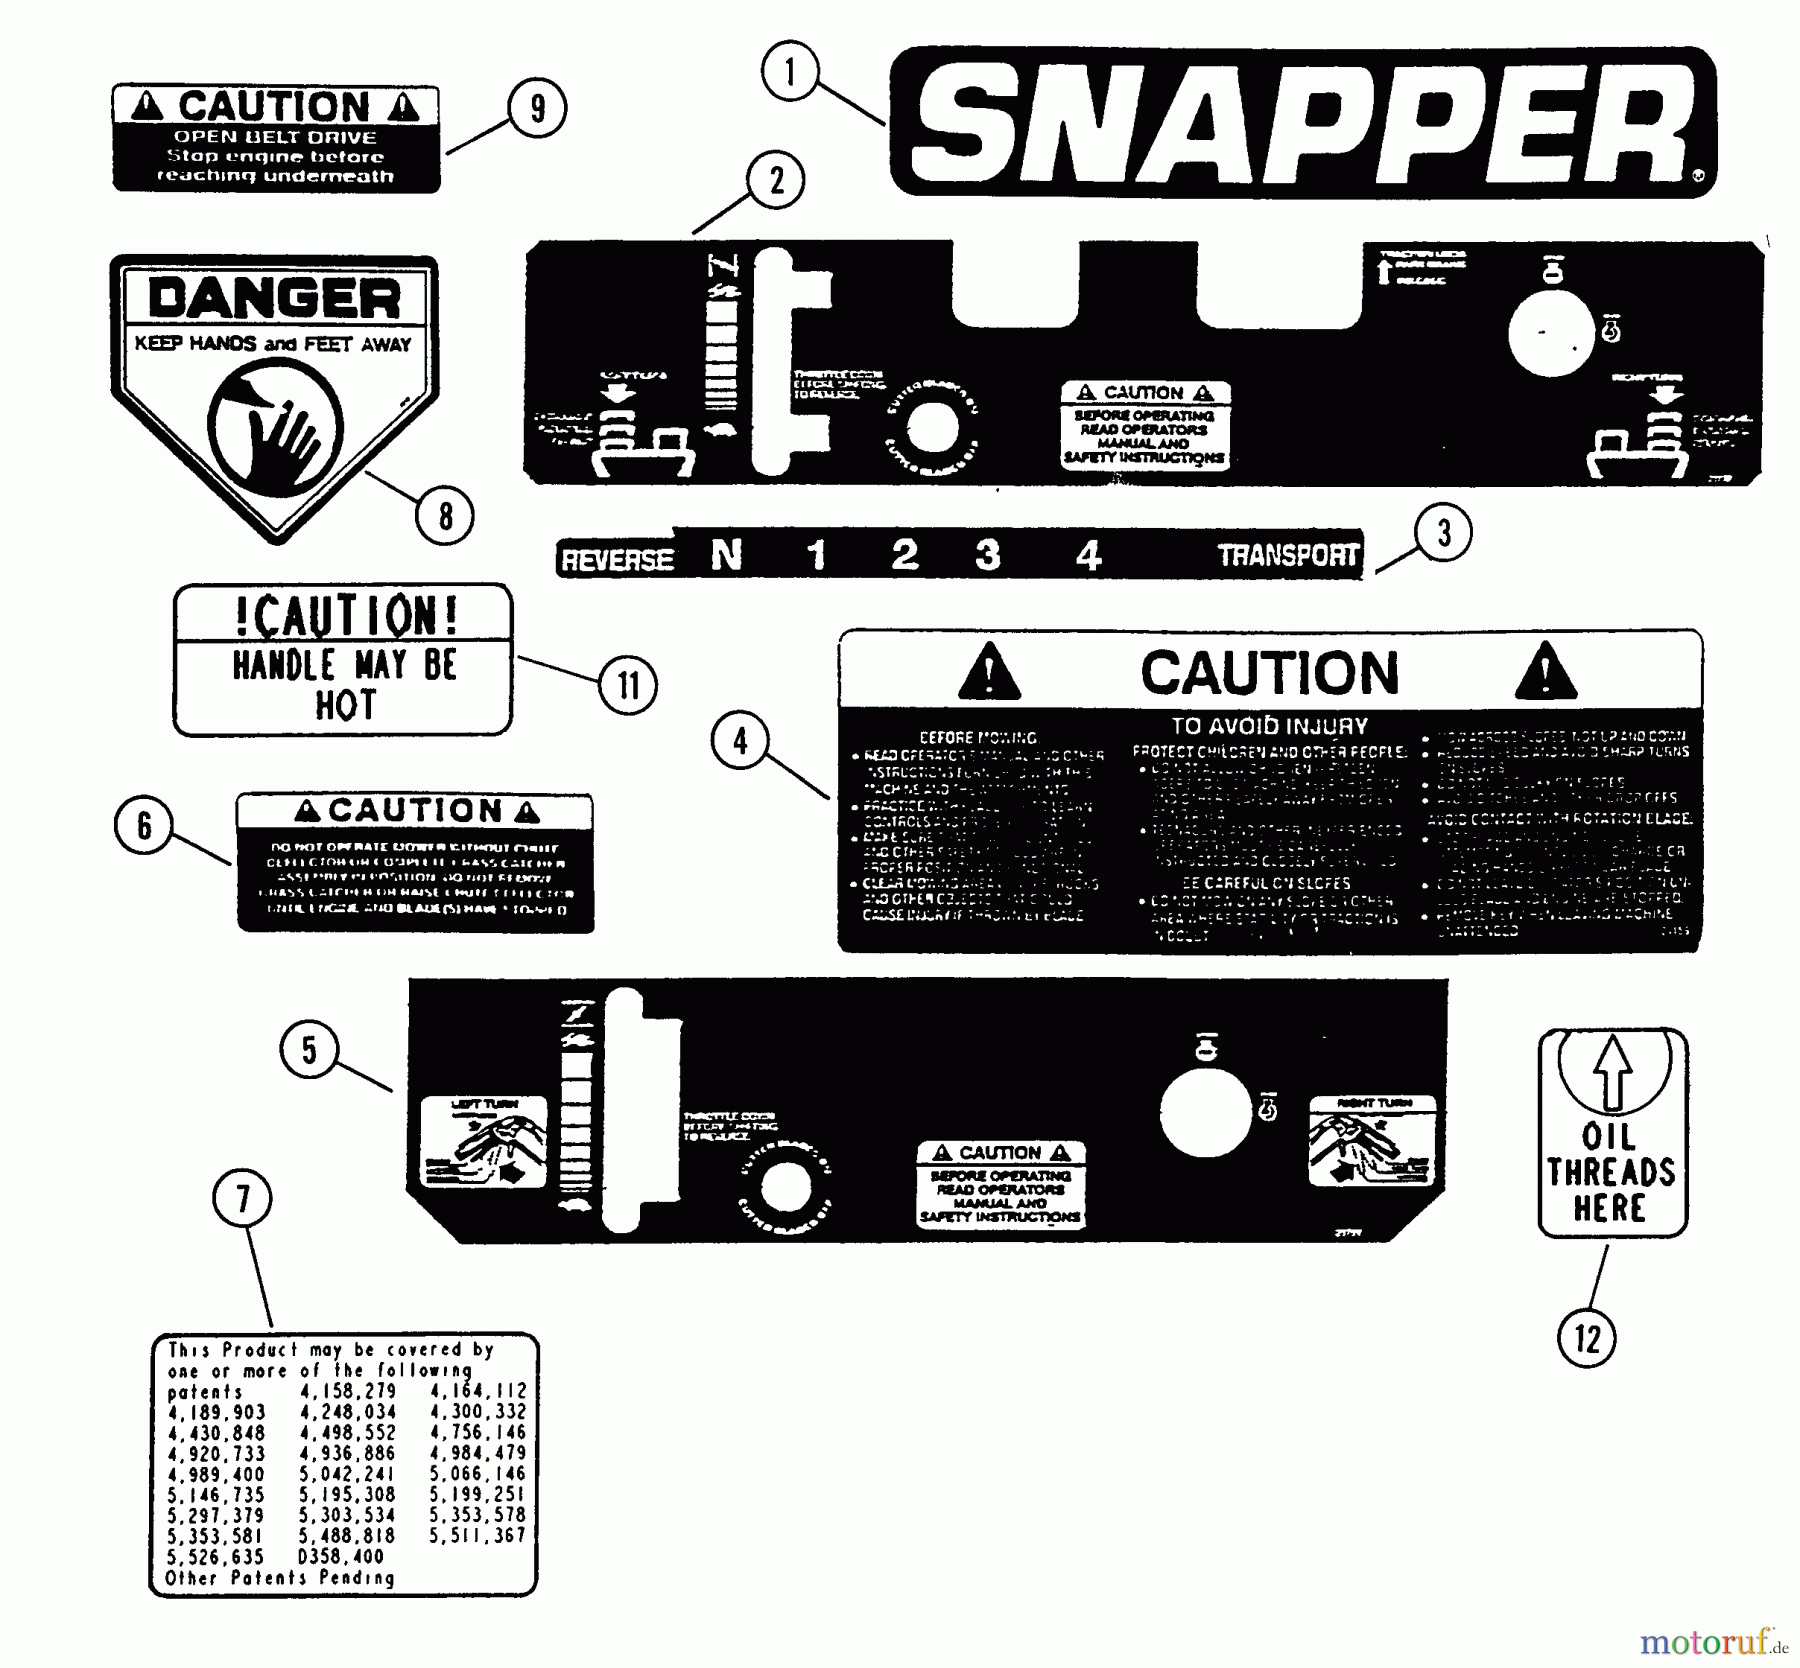  Snapper Mähdecks SP320 - Snapper 32